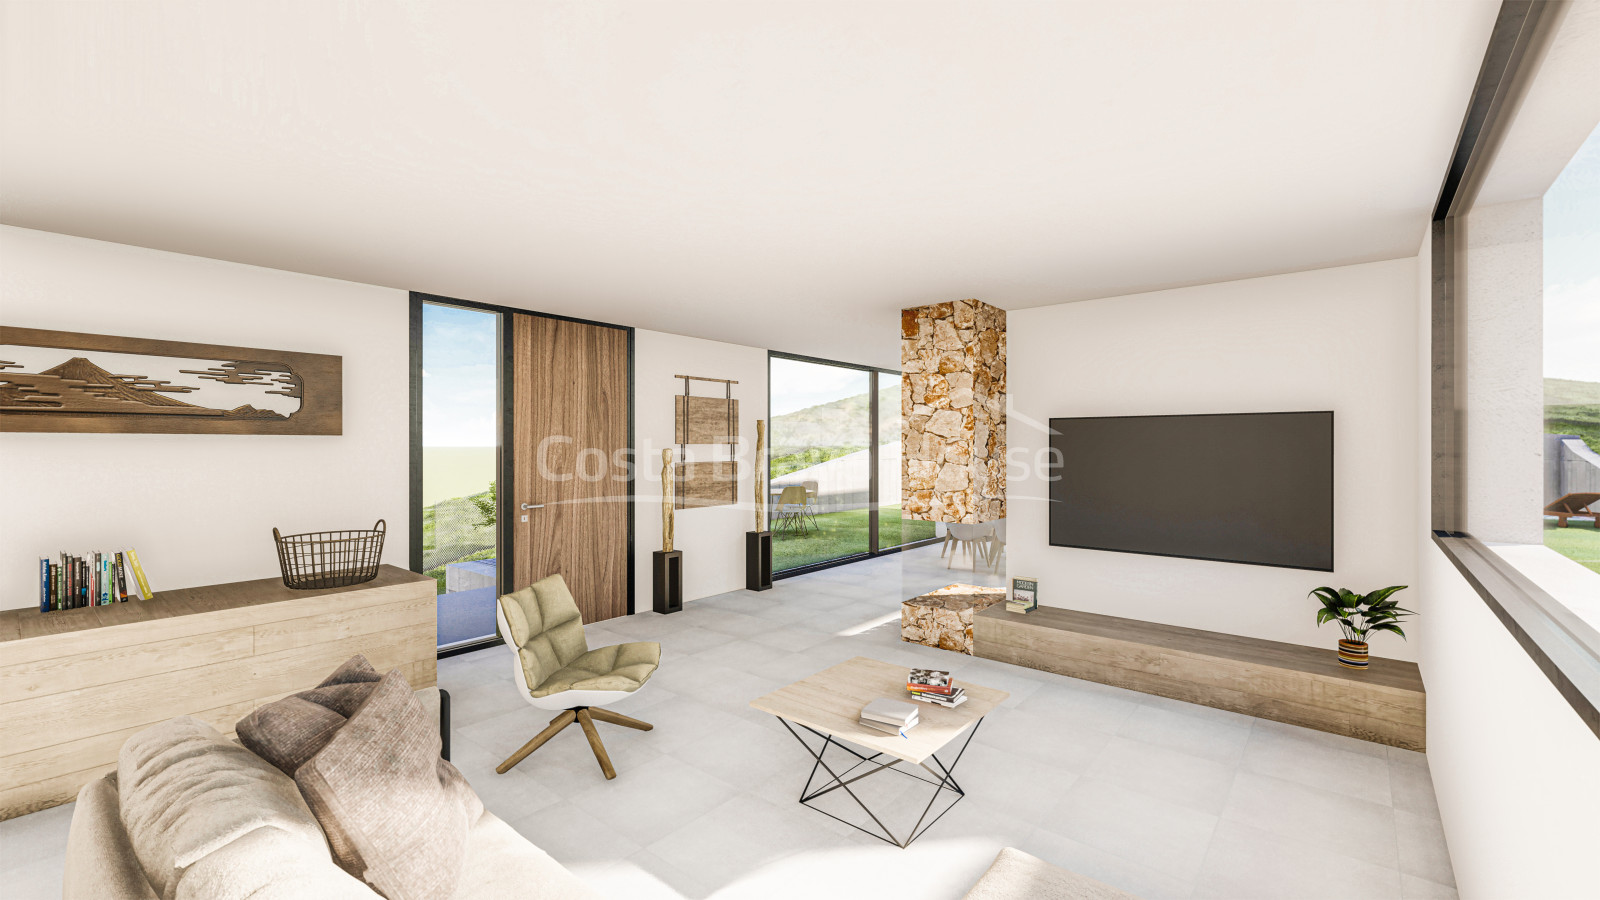 Brand new modern luxury villa in Tamariu with garden, pool and garage